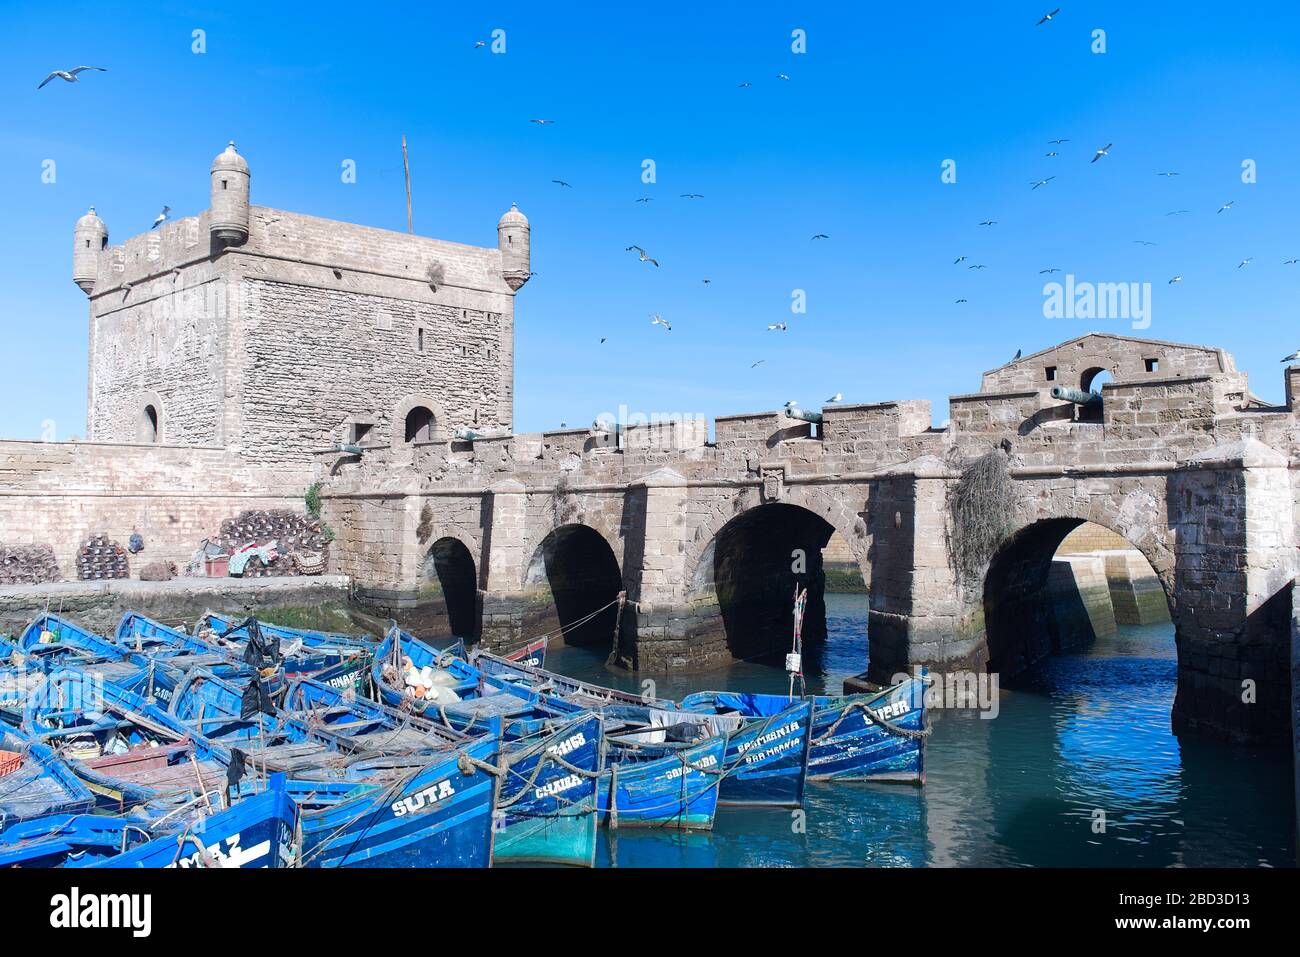 La ciudadela de Essaouira, la Scala del Puerto en la antigua ciudad de  Medina, con icónicos barcos azules en el puerto y un rebaño de gaviotas  volando por encima Fotografía de stock -